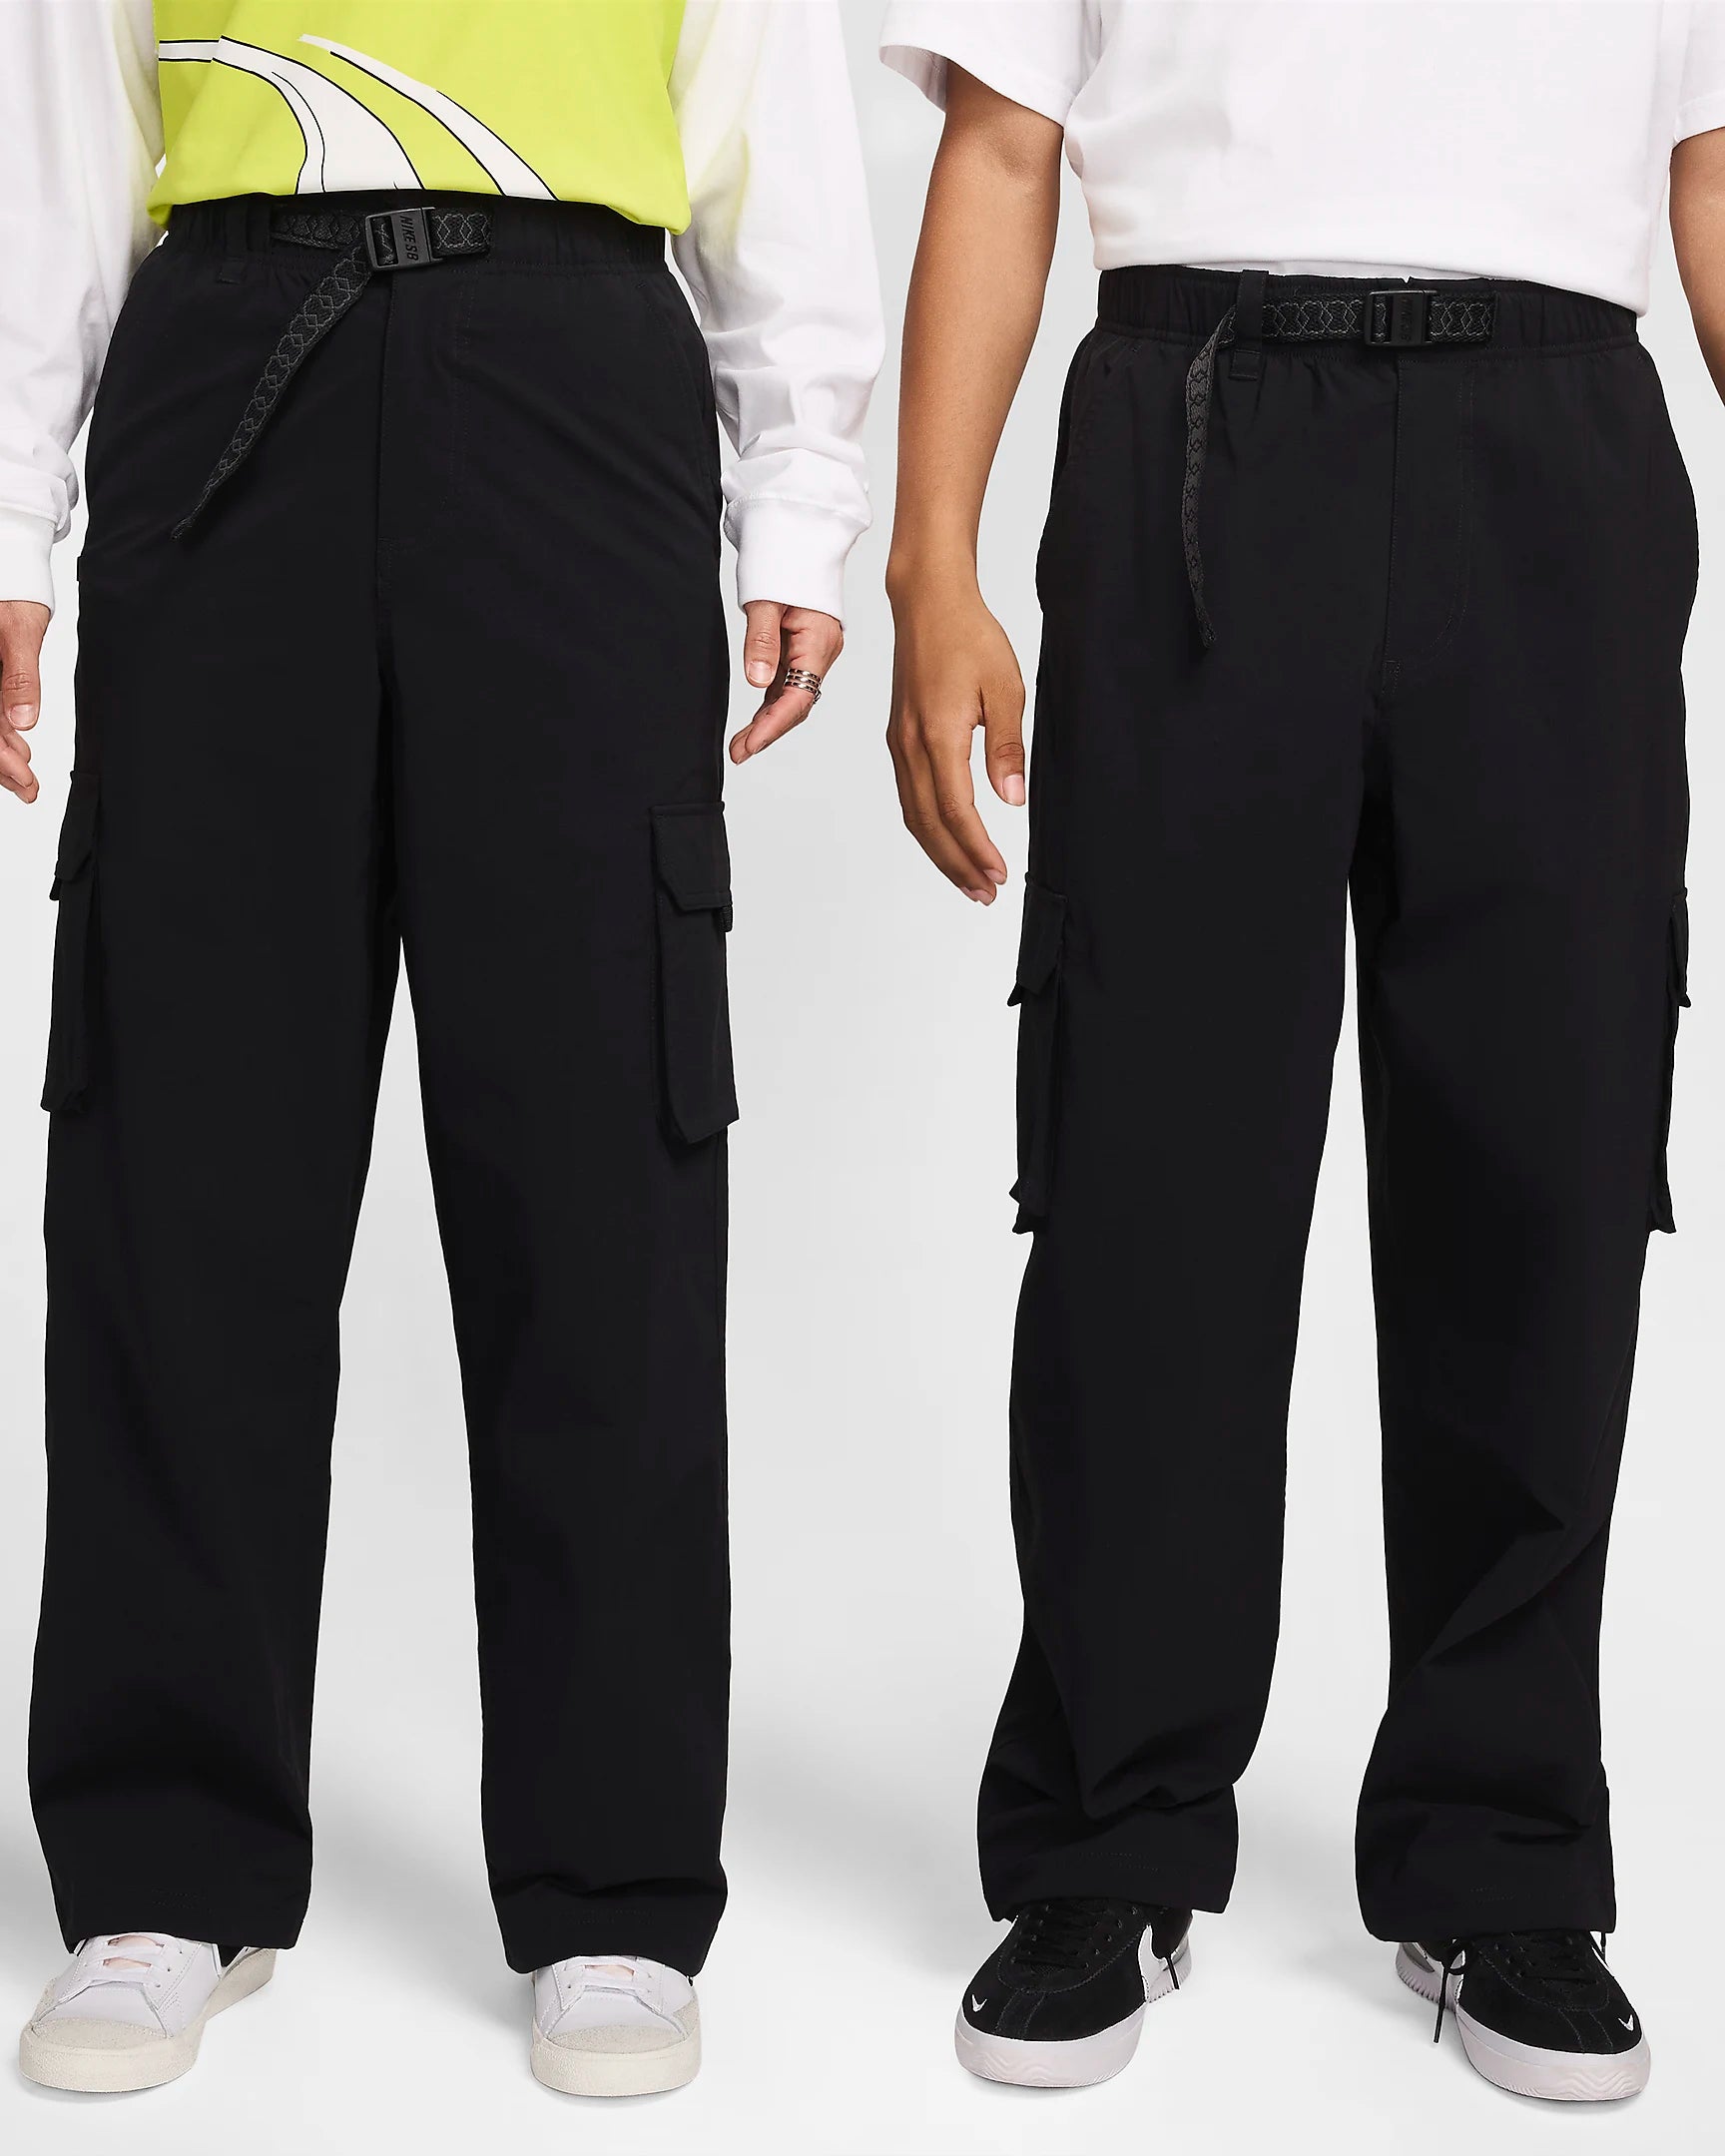 Nike SB - Kearny Cargo Pants Sustainable materials-(black)